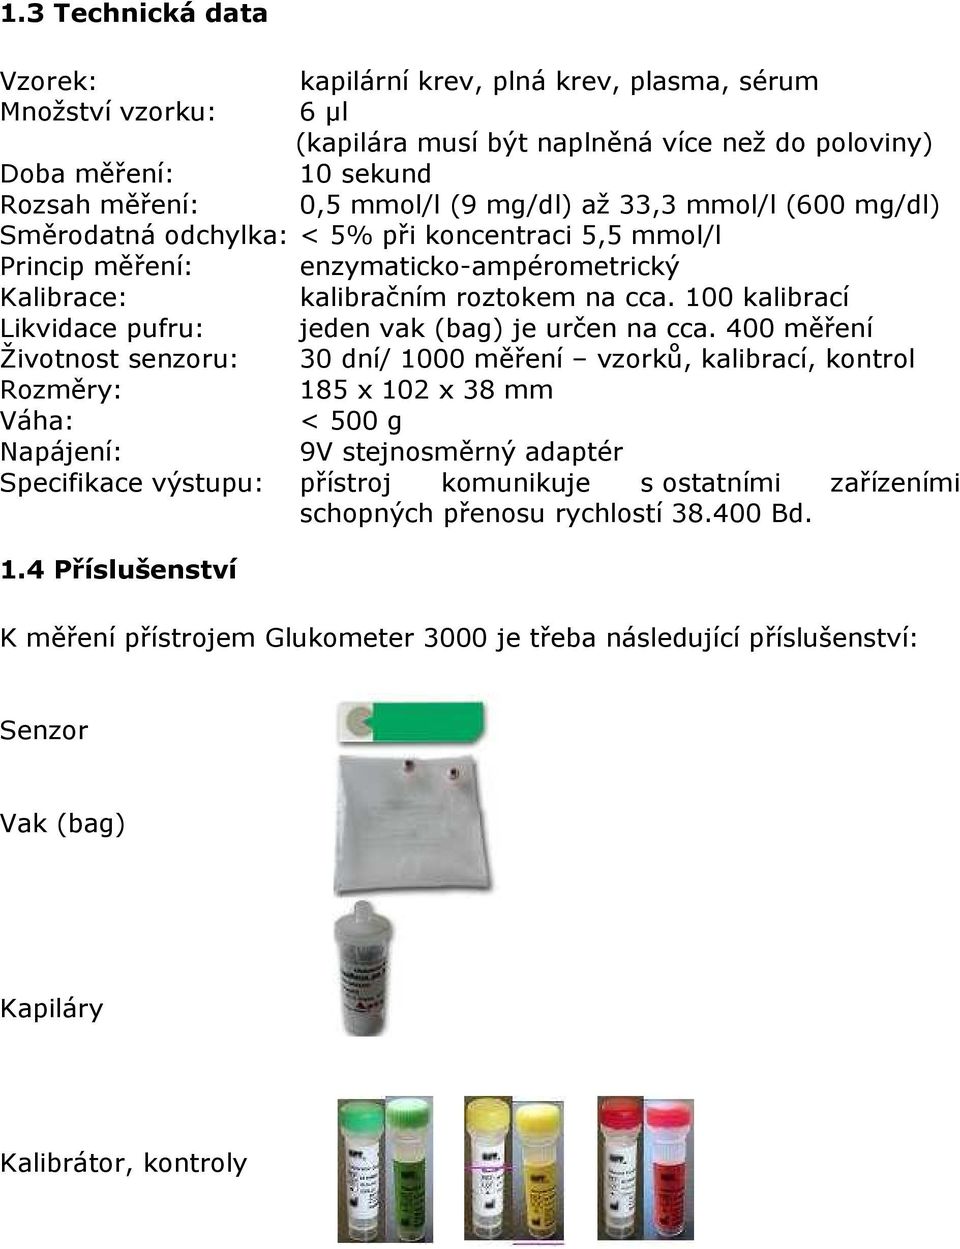 100 kalibrací Likvidace pufru: jeden vak (bag) je určen na cca.